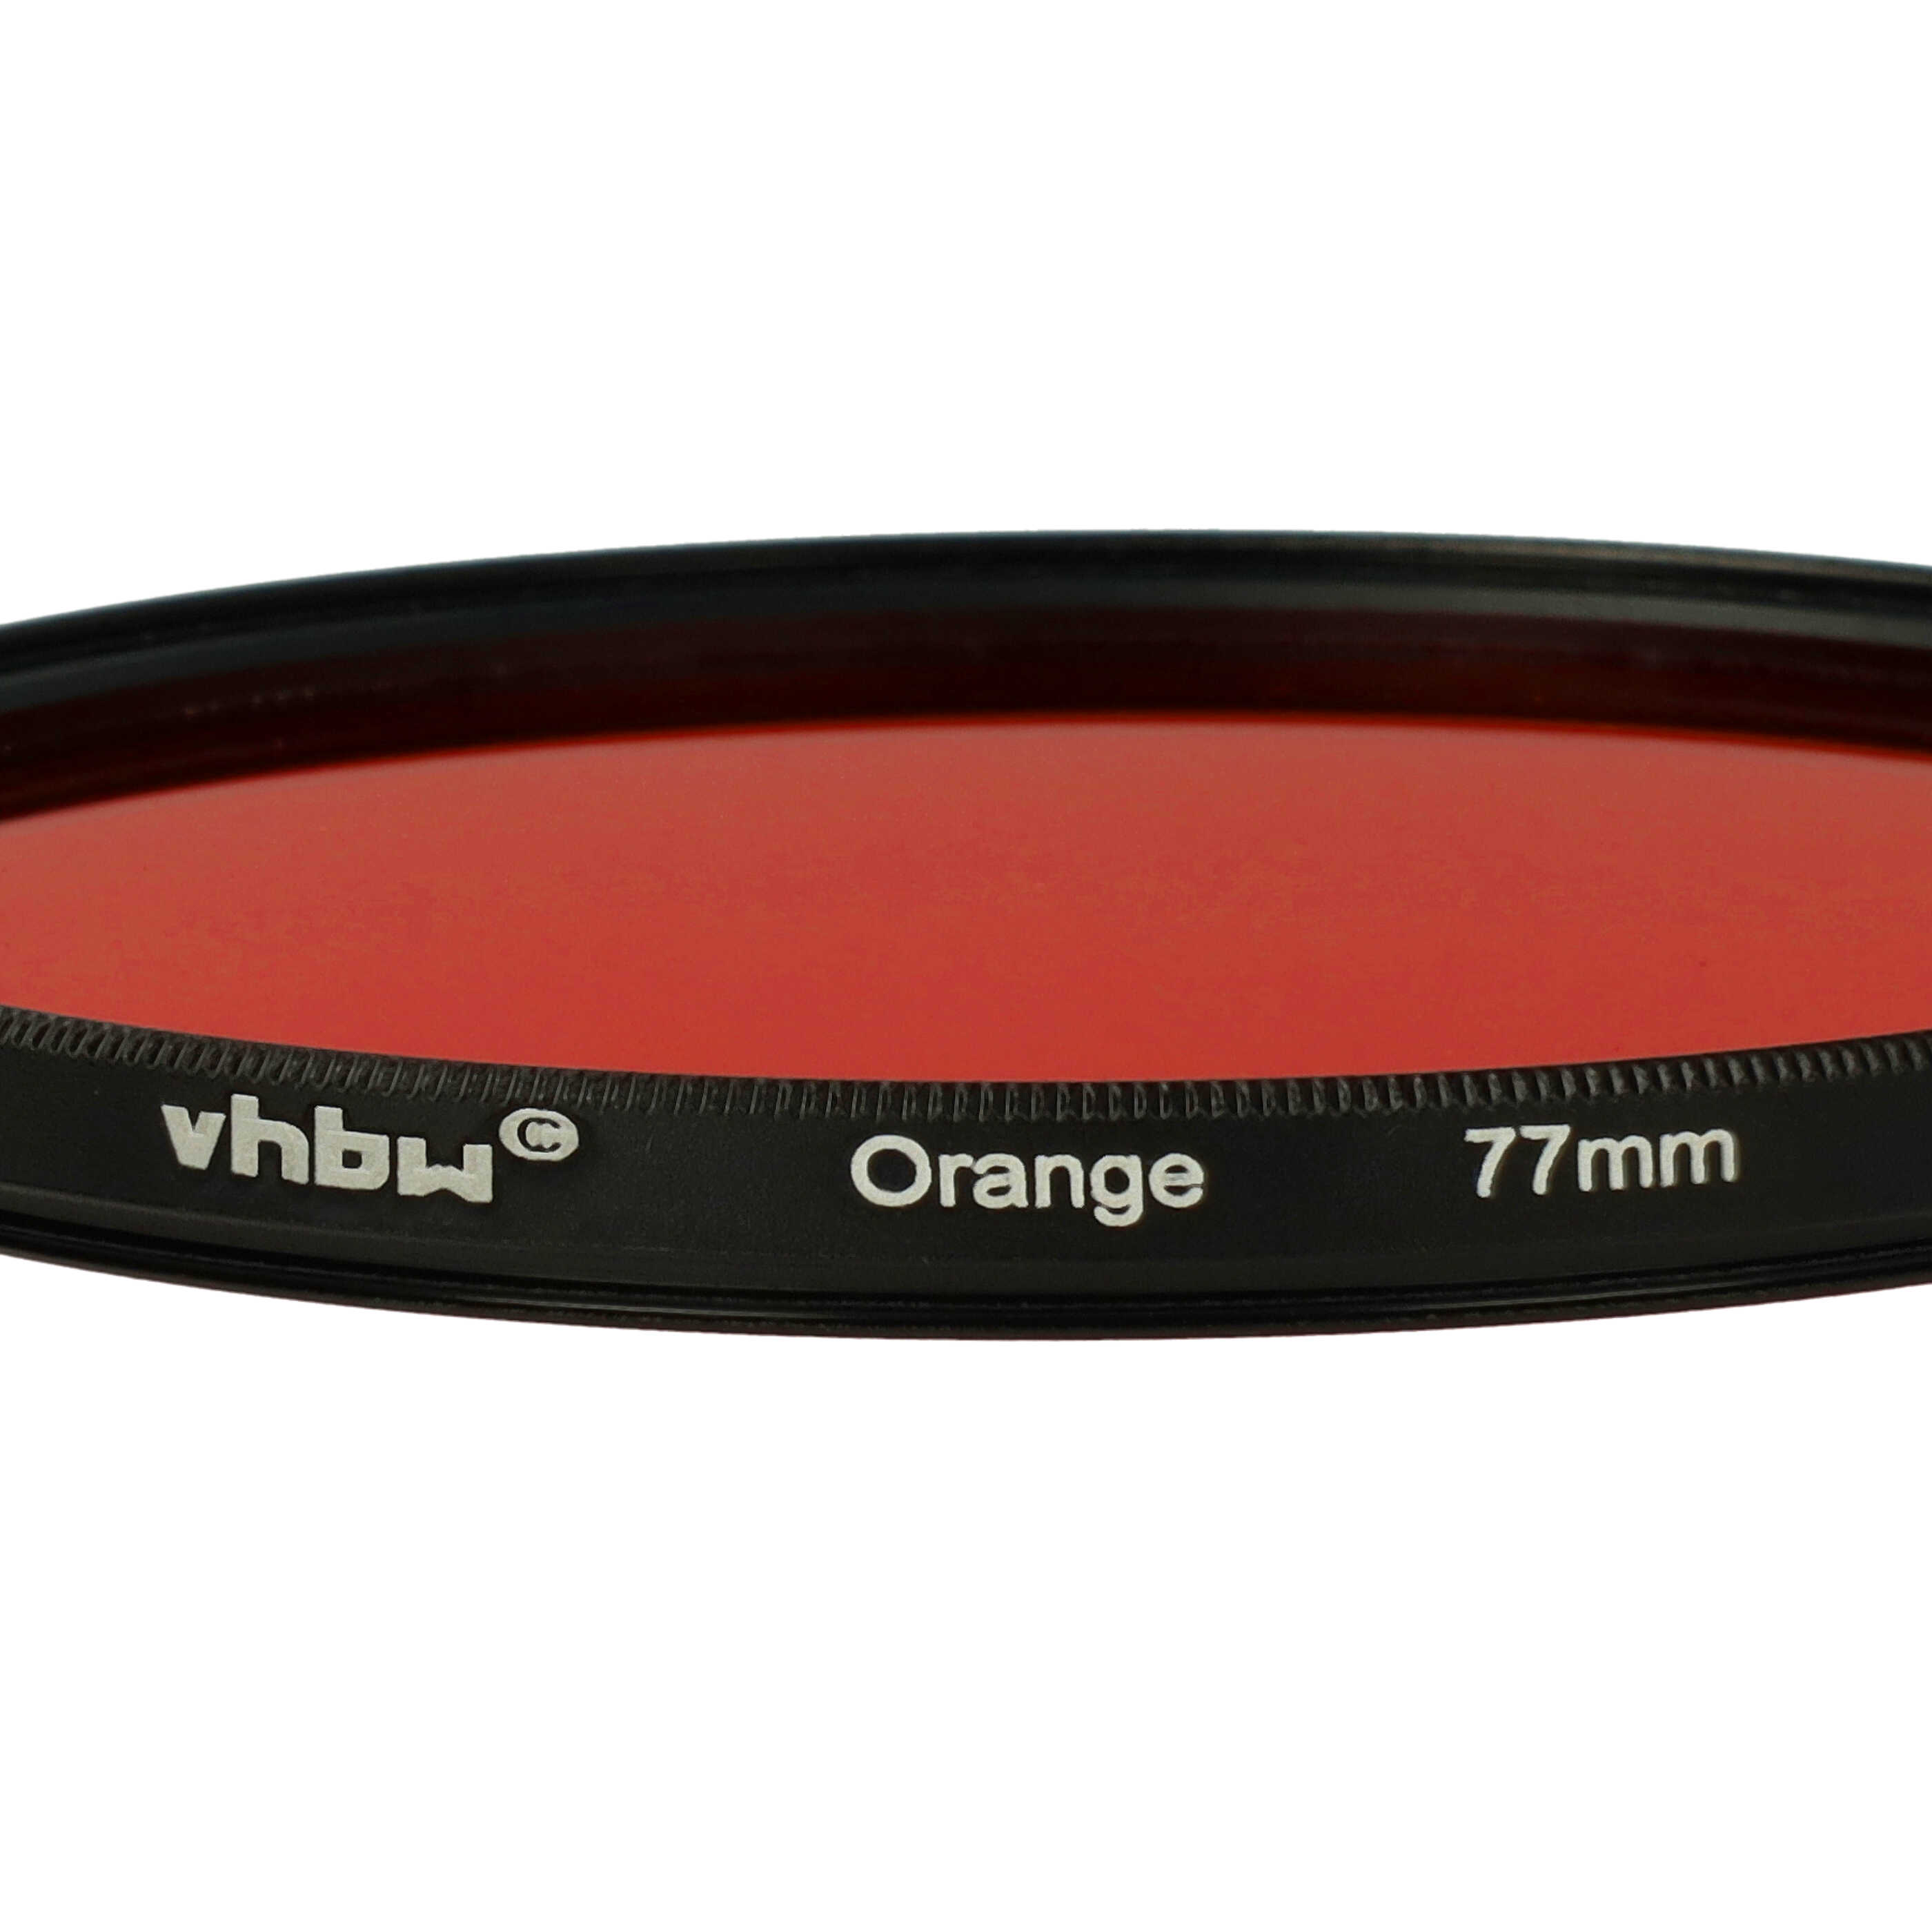 Filtro colorato per obiettivi fotocamera con filettatura da 77 mm - filtro arancione